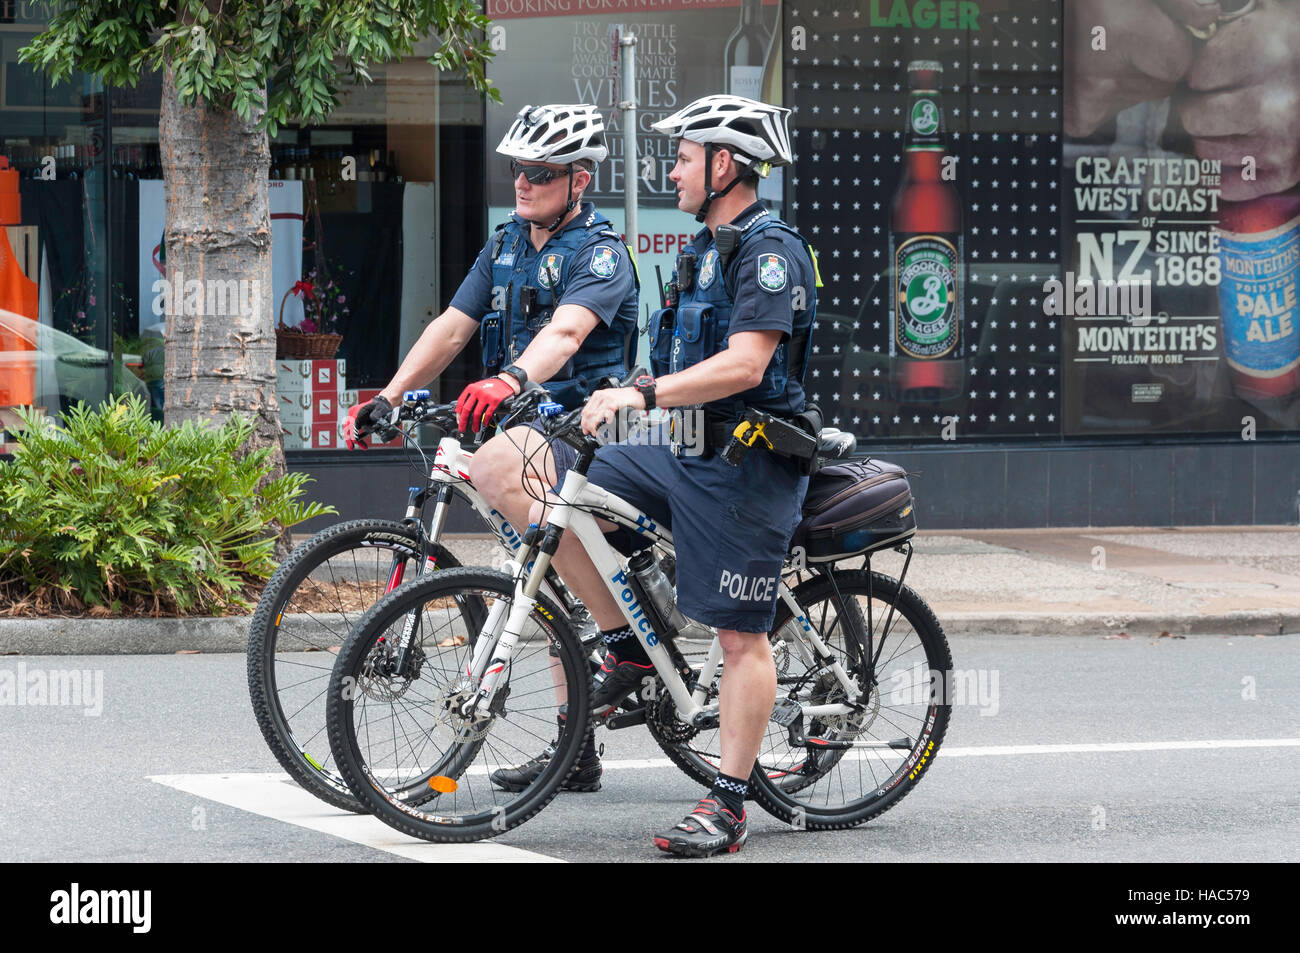 Les policiers qui patrouillent sur les bicyclettes, Wickham Street, Fortitude Valley, Brisbane, Queensland, Australie Banque D'Images